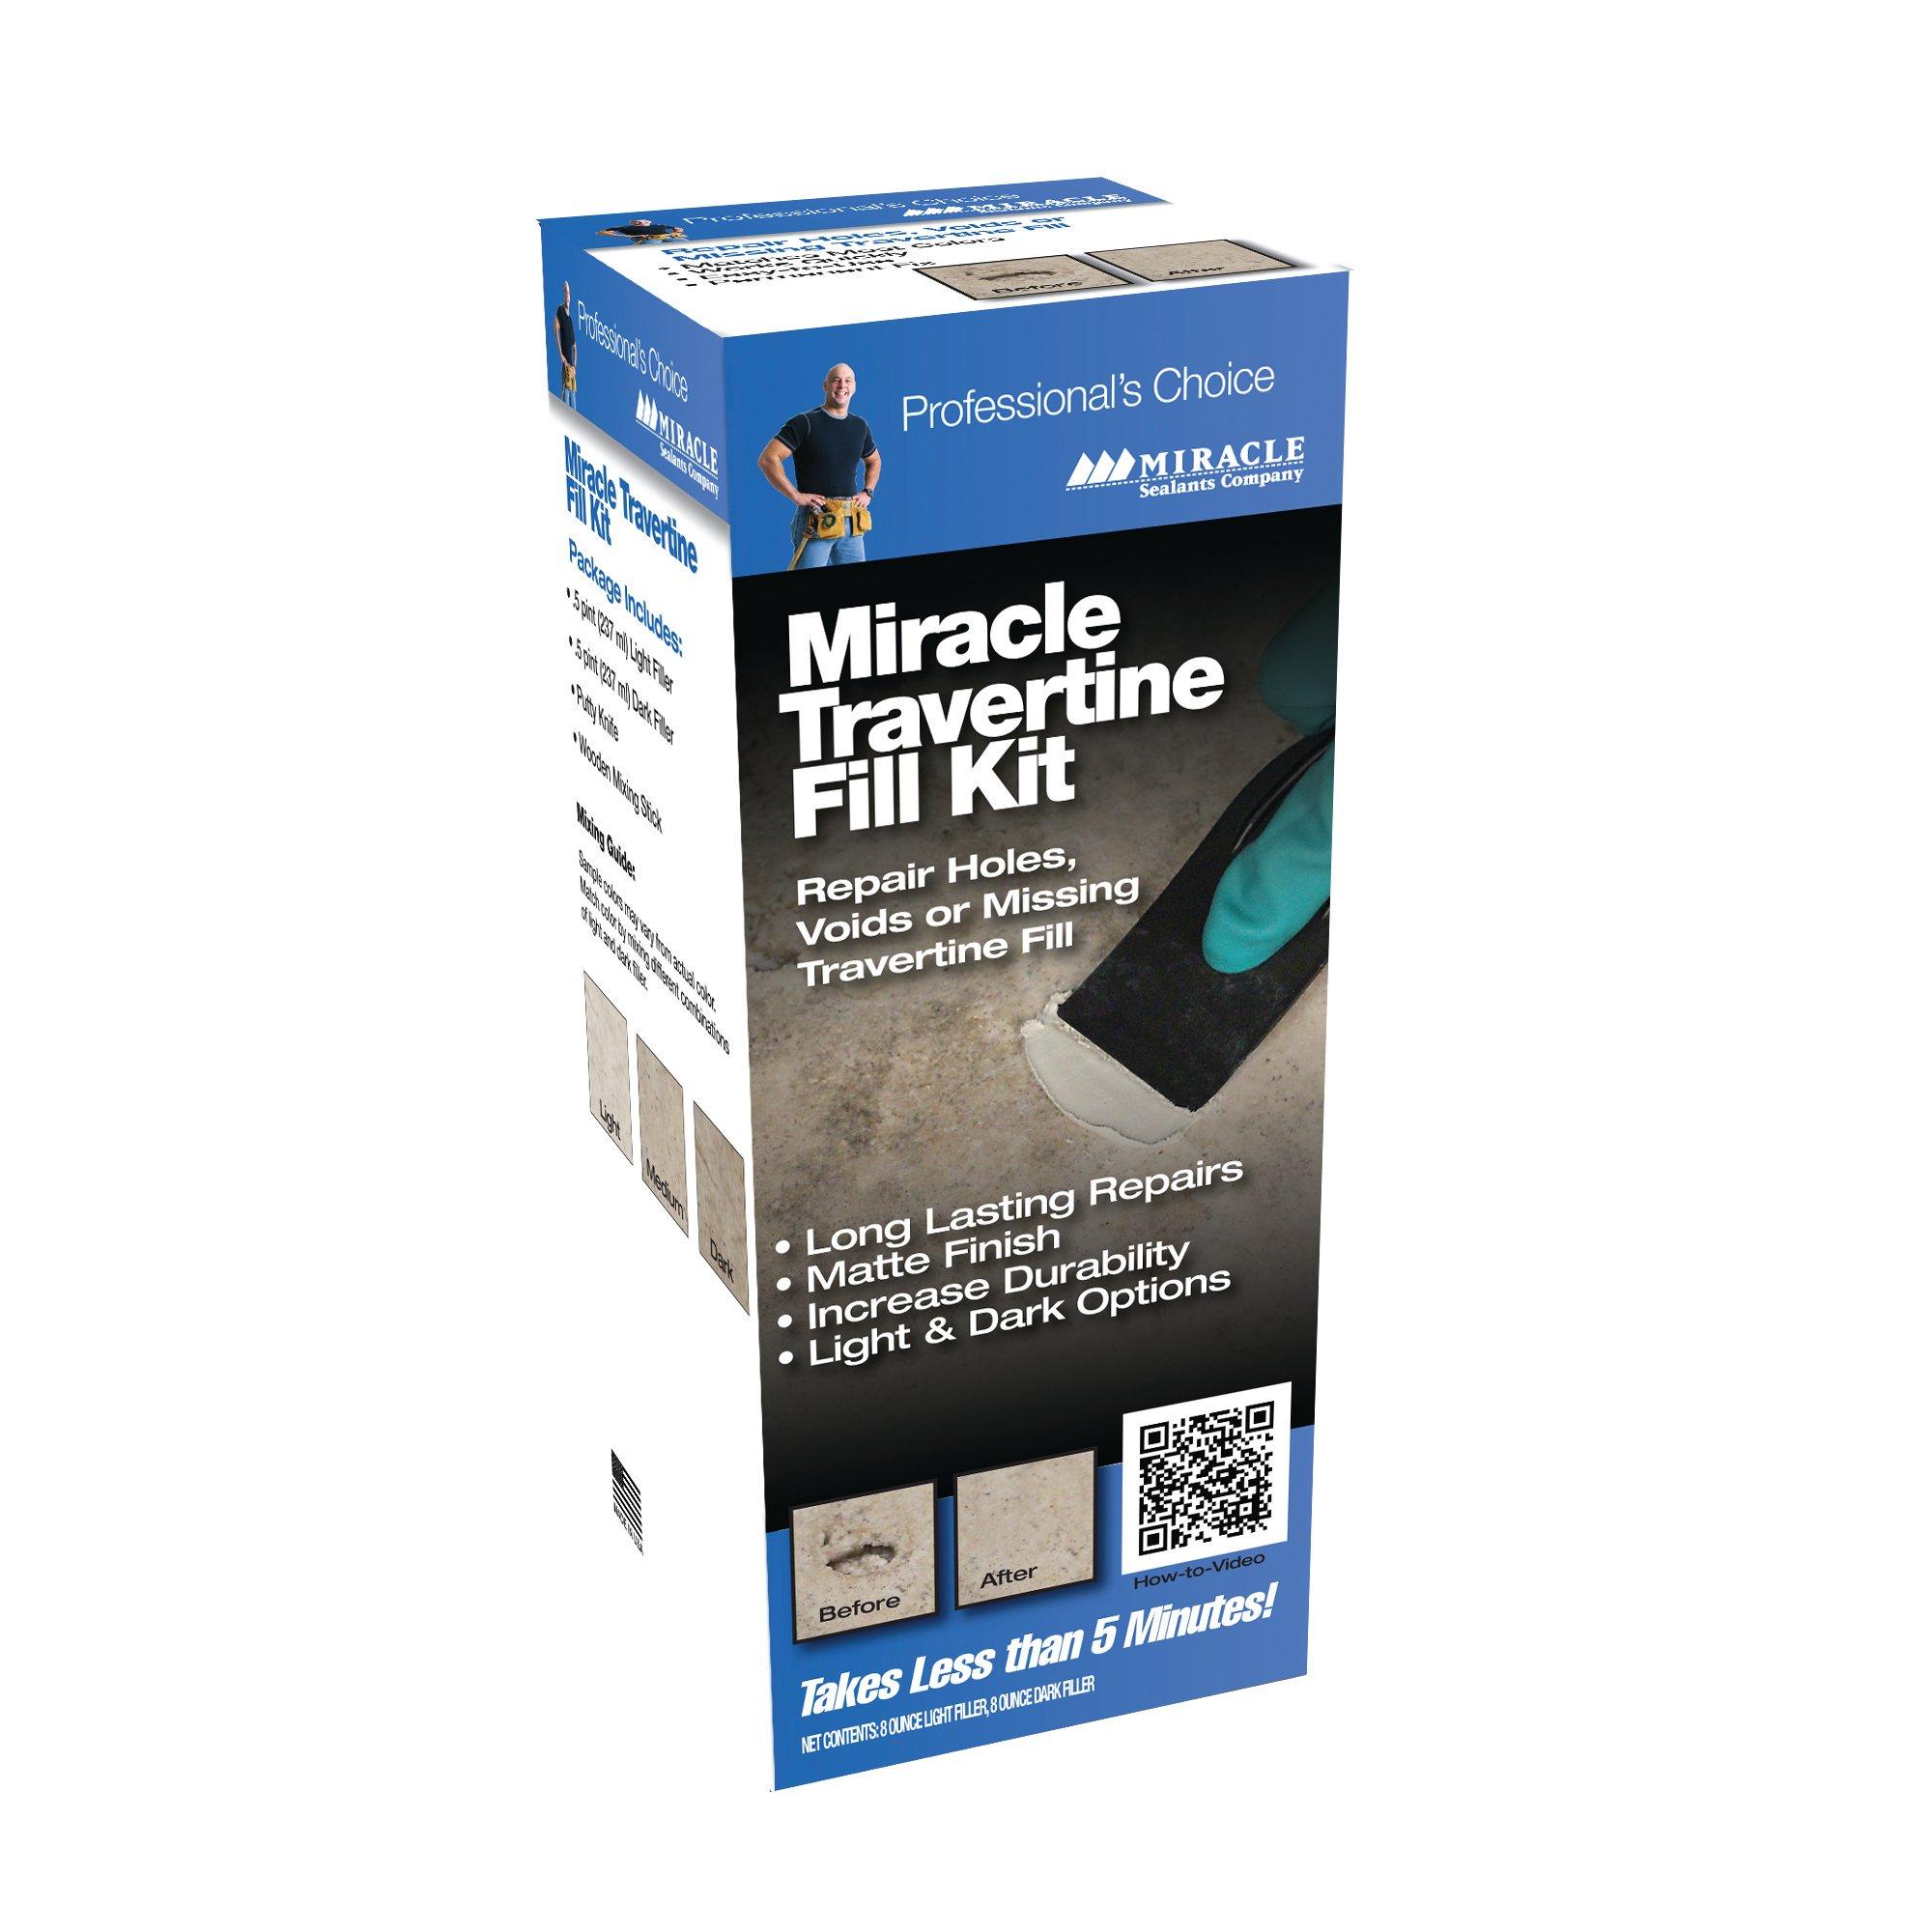 Miracle Travertine Filler Kit